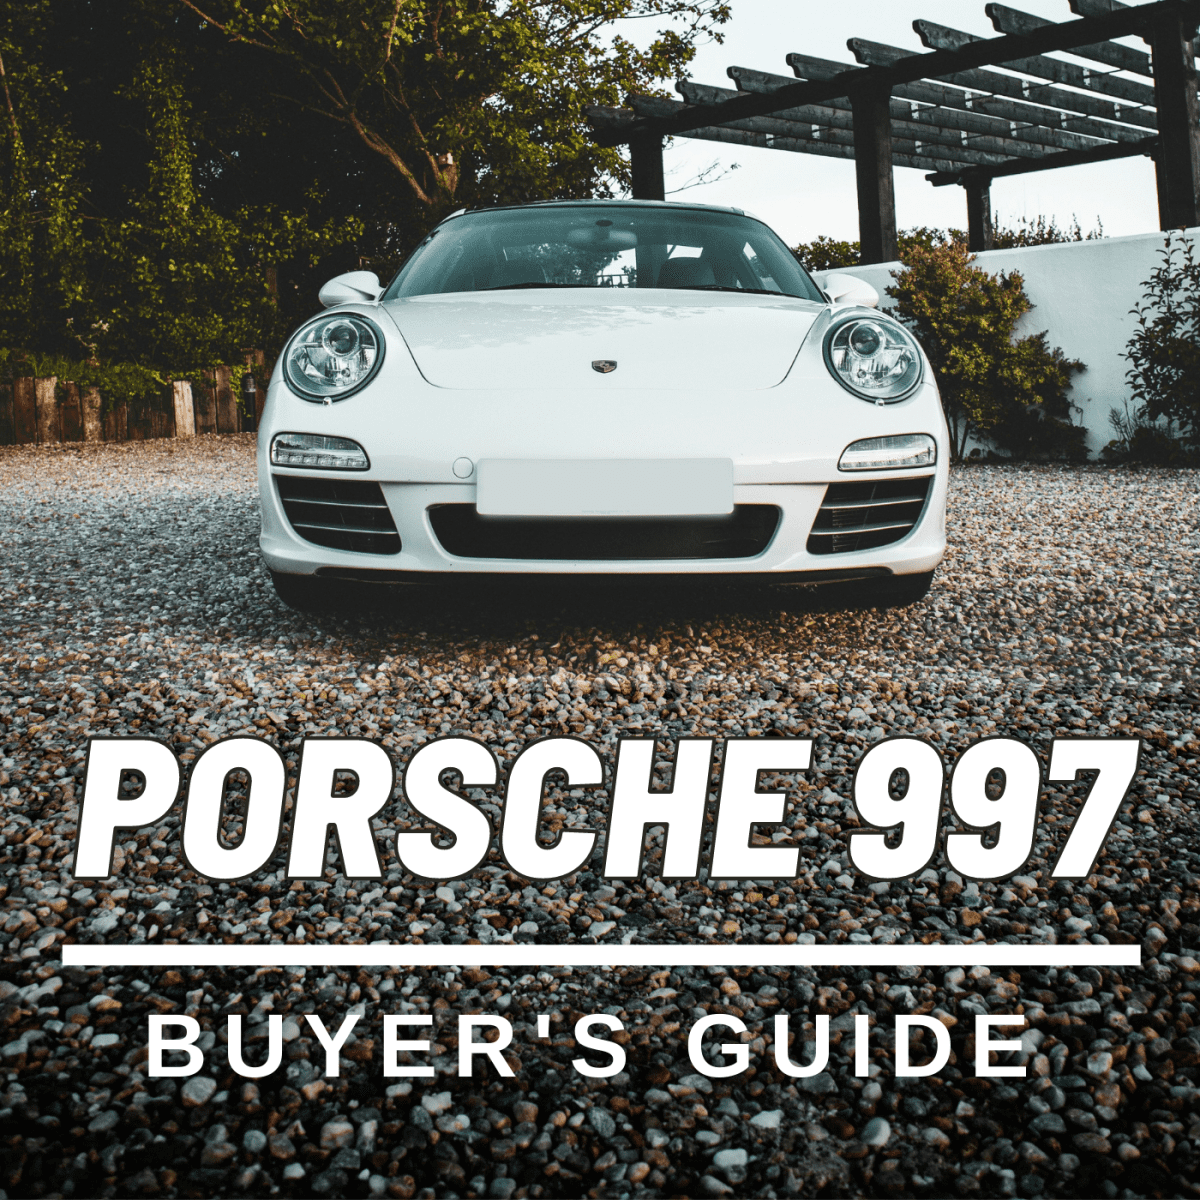 Porsche 997 Buyer's Guide - AxleAddict